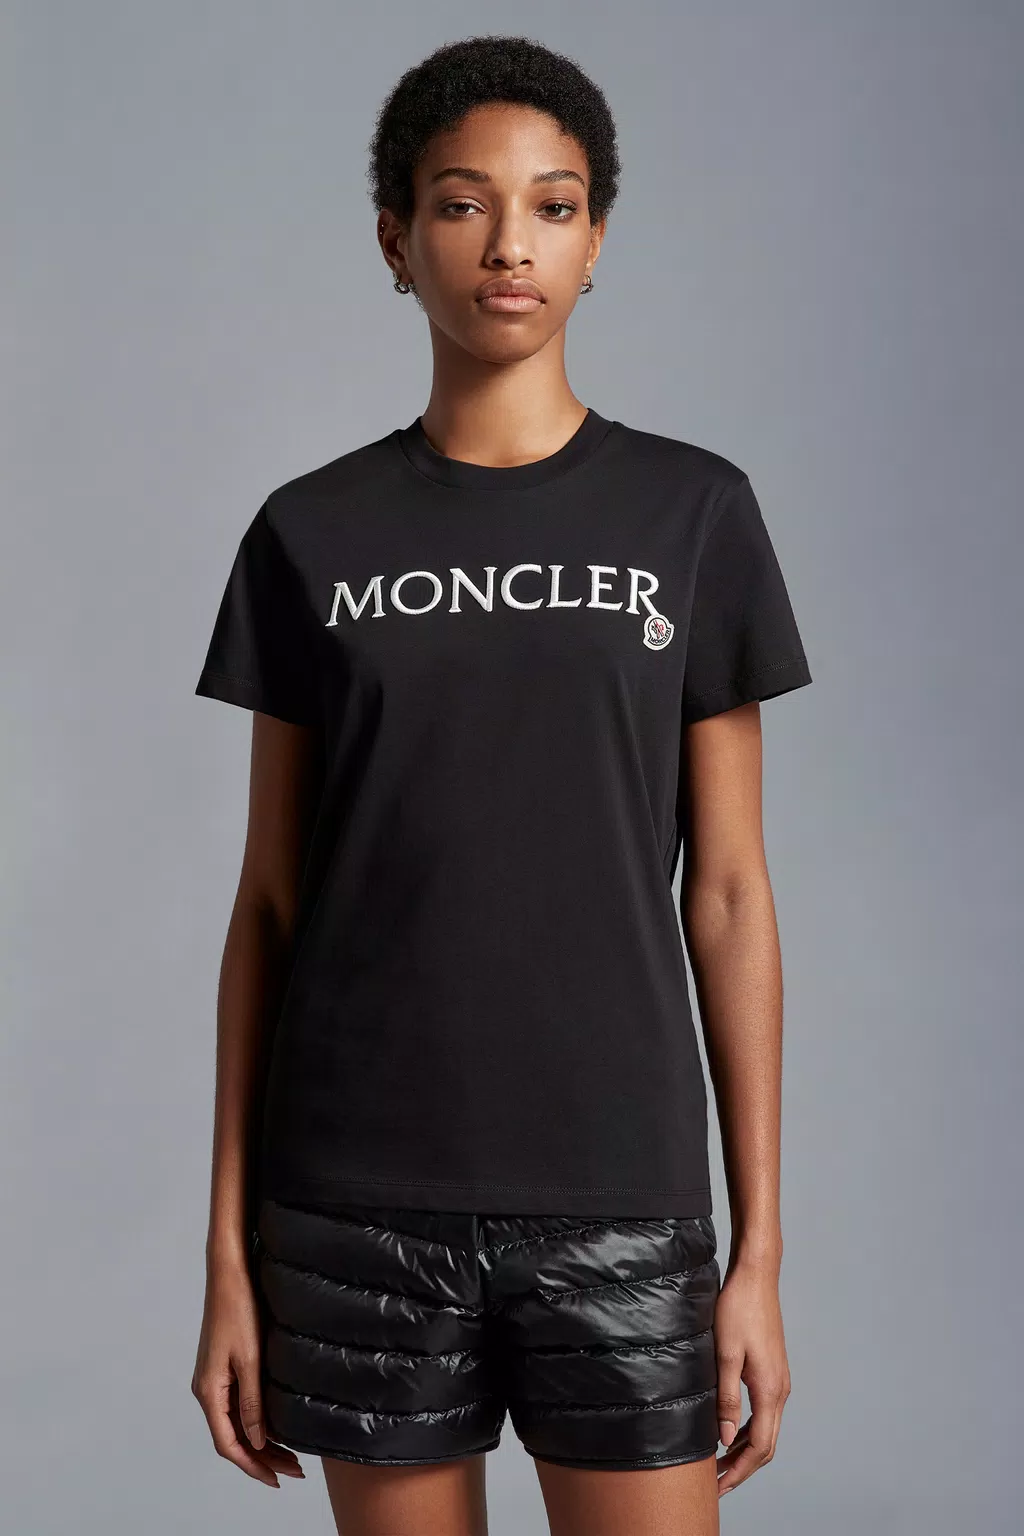 Tシャツ レディース ブラック Moncler 1